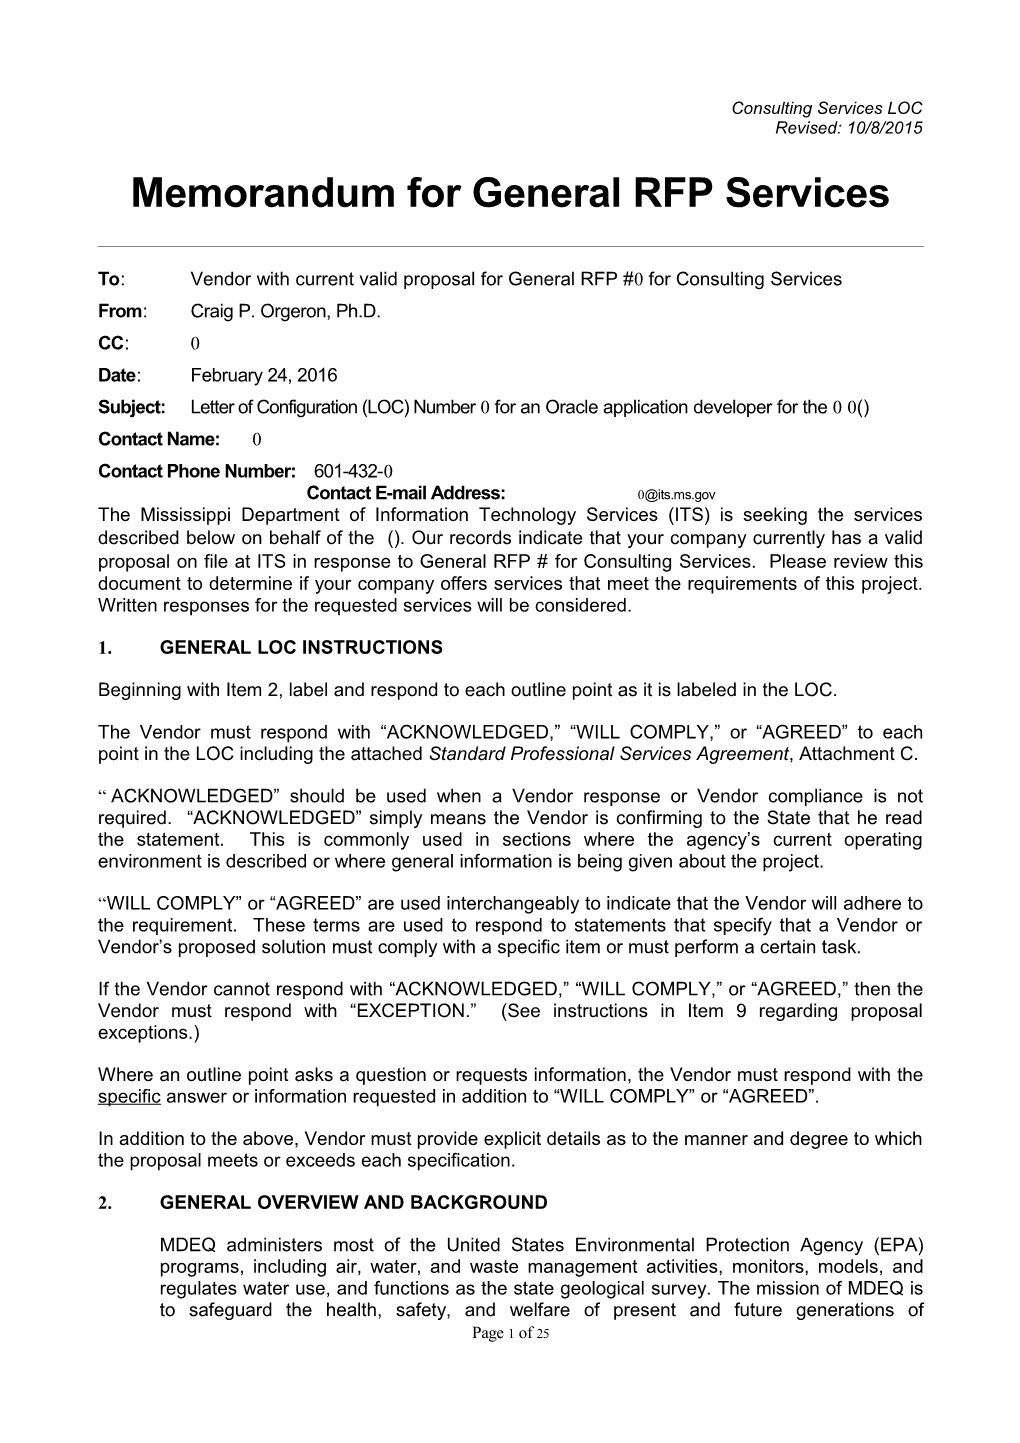 Memorandum for General RFP Configuration s3